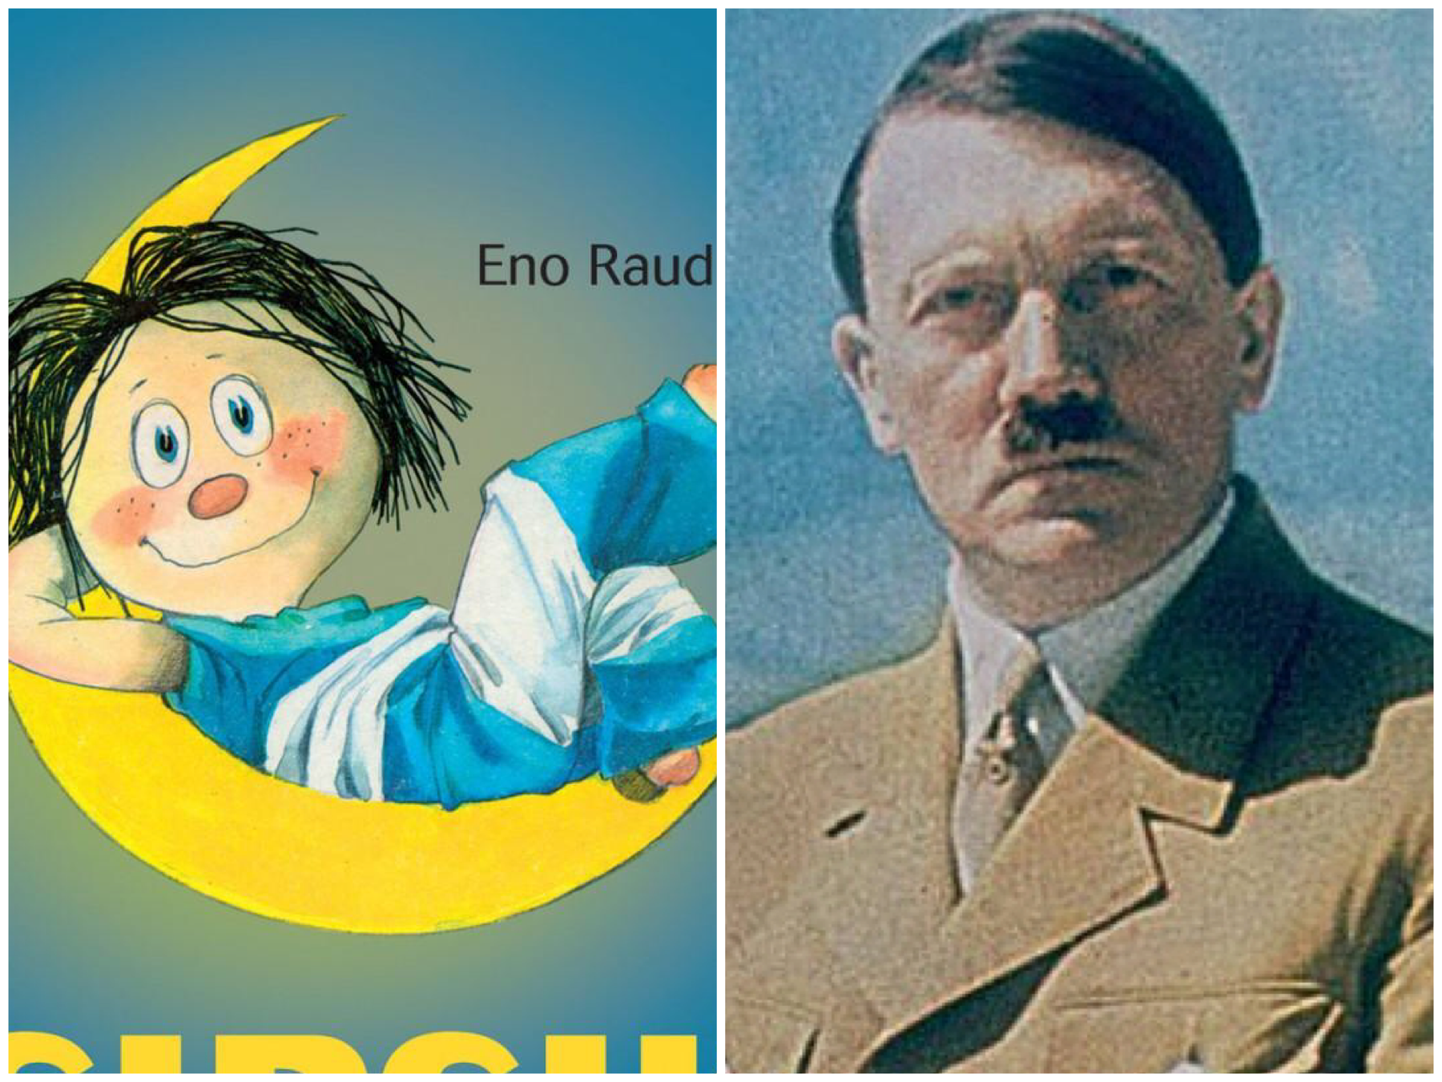 Среди популярных книг у русскоязычной аудитории Эстонии также оказались «Сипсик» Эно Рауда и книга Михаэля Грандта «Адольф Гитлер.Корректировка».